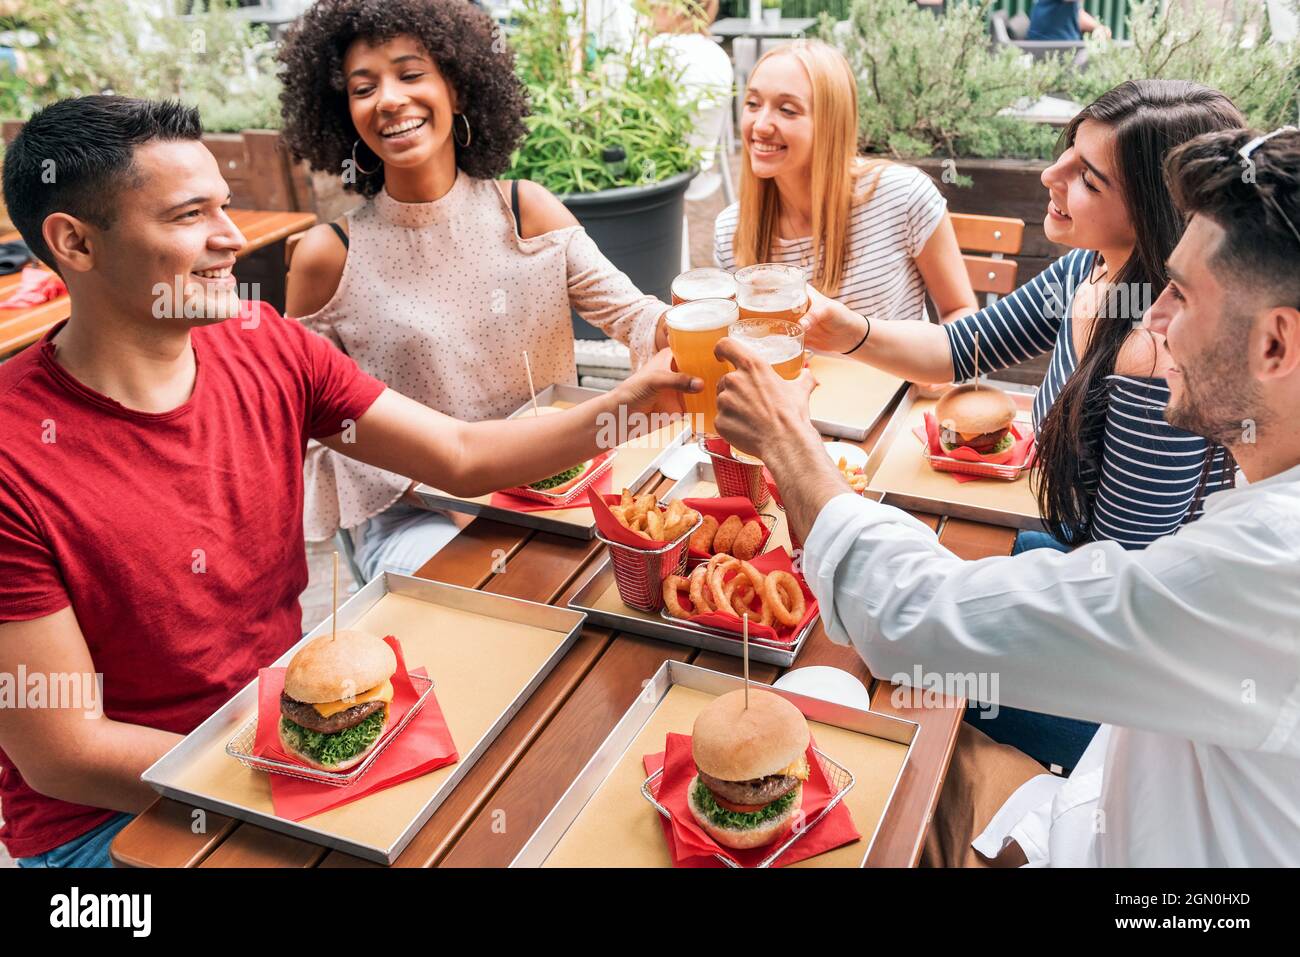 Gruppo di amici allegri multietnici che si riuniscono a tavola con fast food e bicchieri di birra aggraffati, mentre propongono pane tostato e festeggia un amico Foto Stock